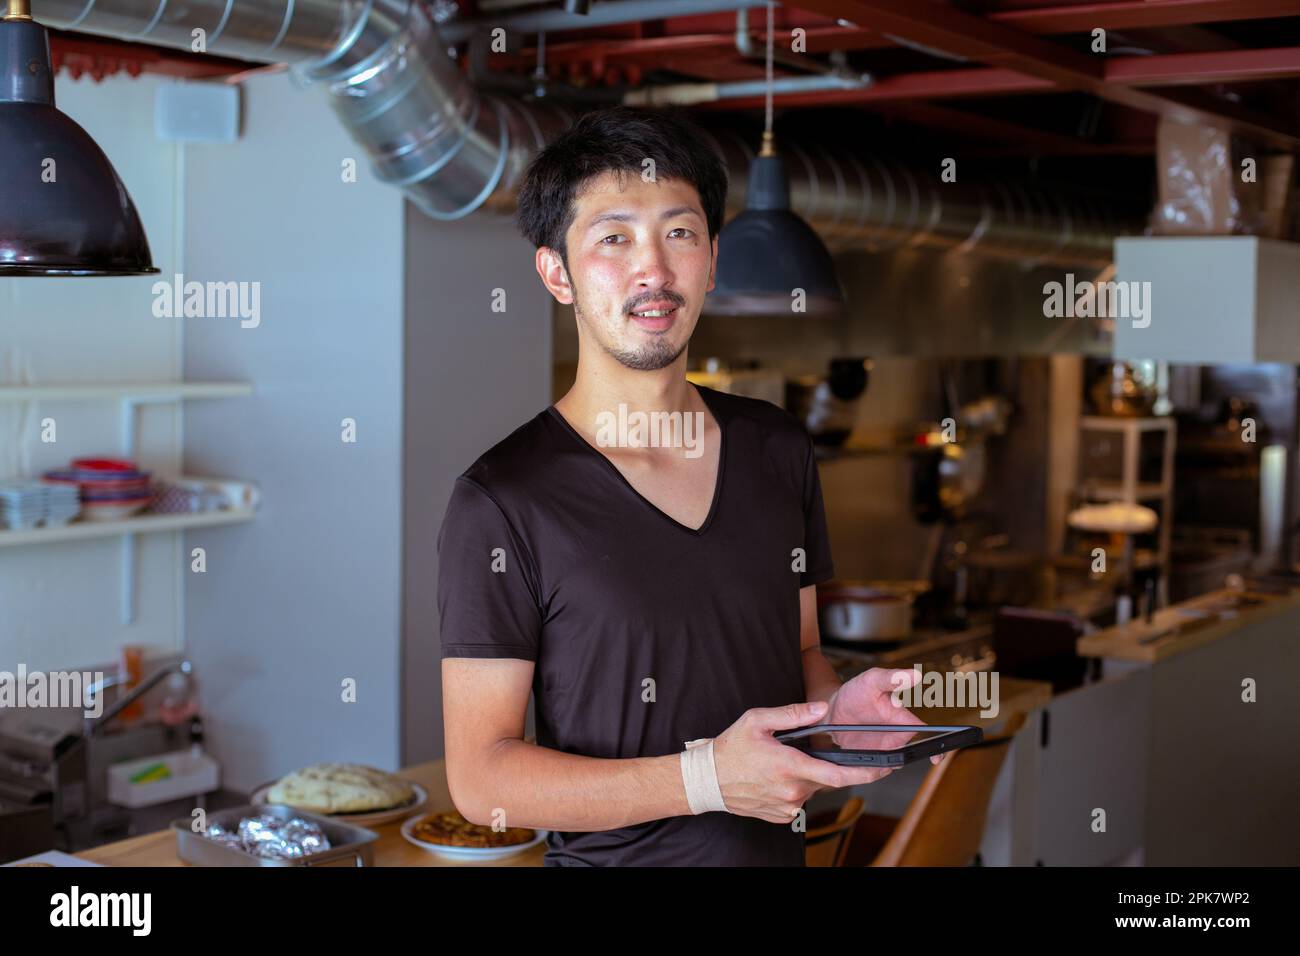 Ein Mann, der in einem Restaurant bei einer offenen Küche arbeitet und ein digitales Tablet in der Hand hält. Stockfoto